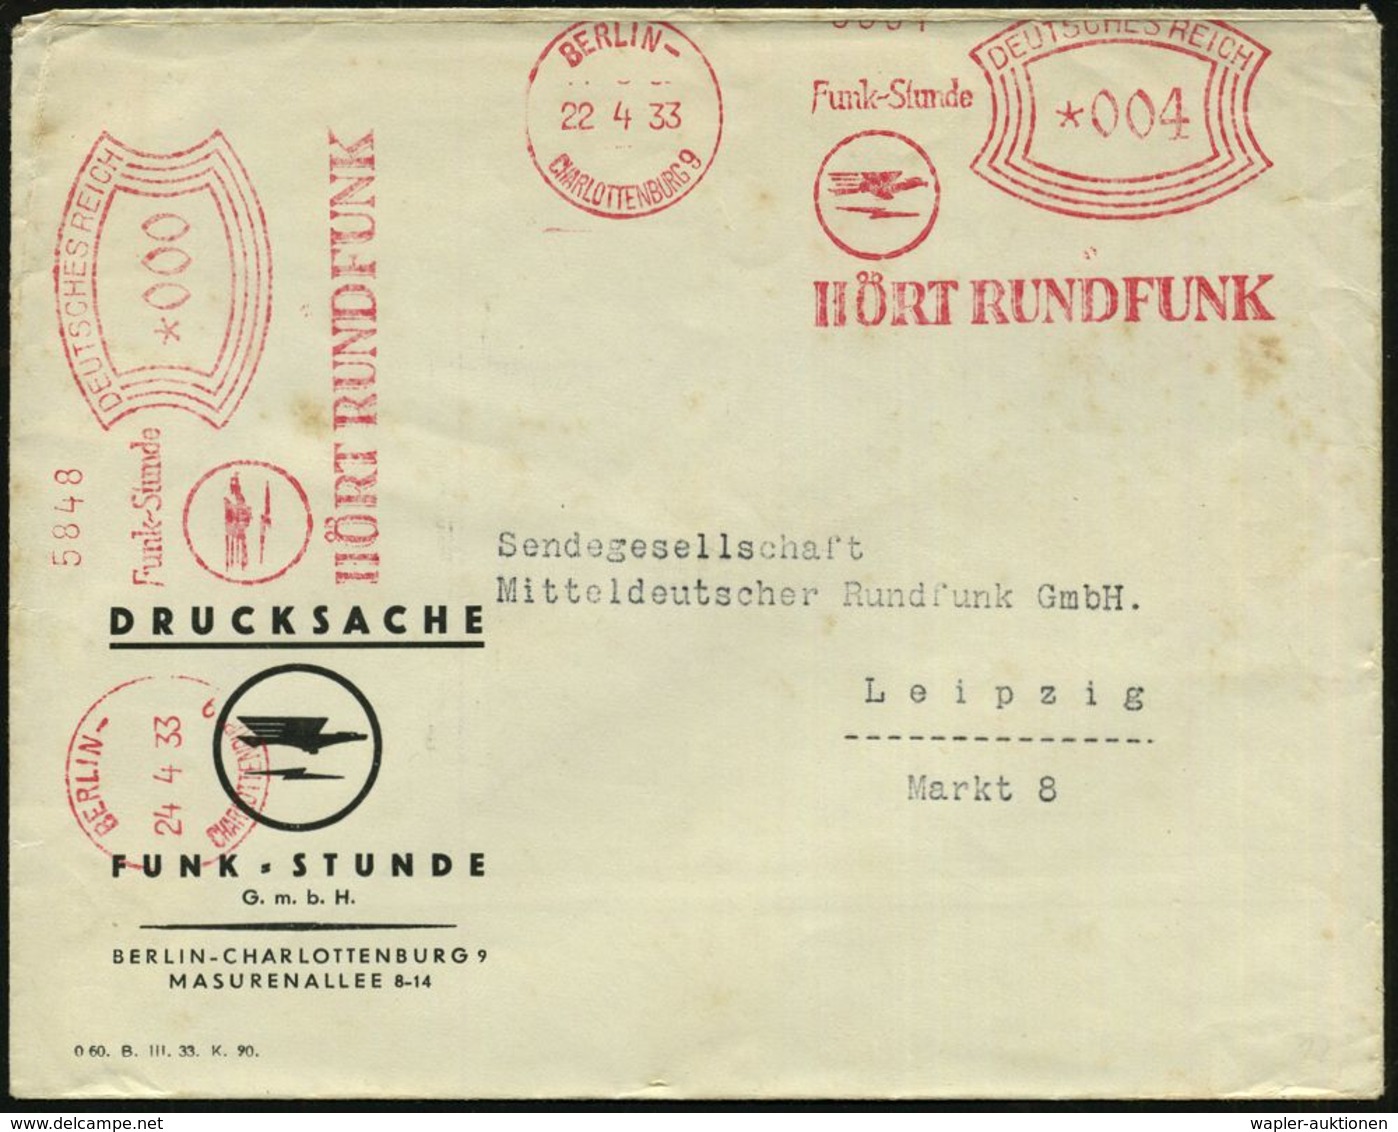 BERLIN-/ CHARLOTTENBURG9/ Funk-Stunde/ HÖRT RUNDFUNK 1933 (22.5.) AFS 004 Pf. + 000 = Sender-Logo, 2 Abdrucke (Adler, Bl - Zonder Classificatie